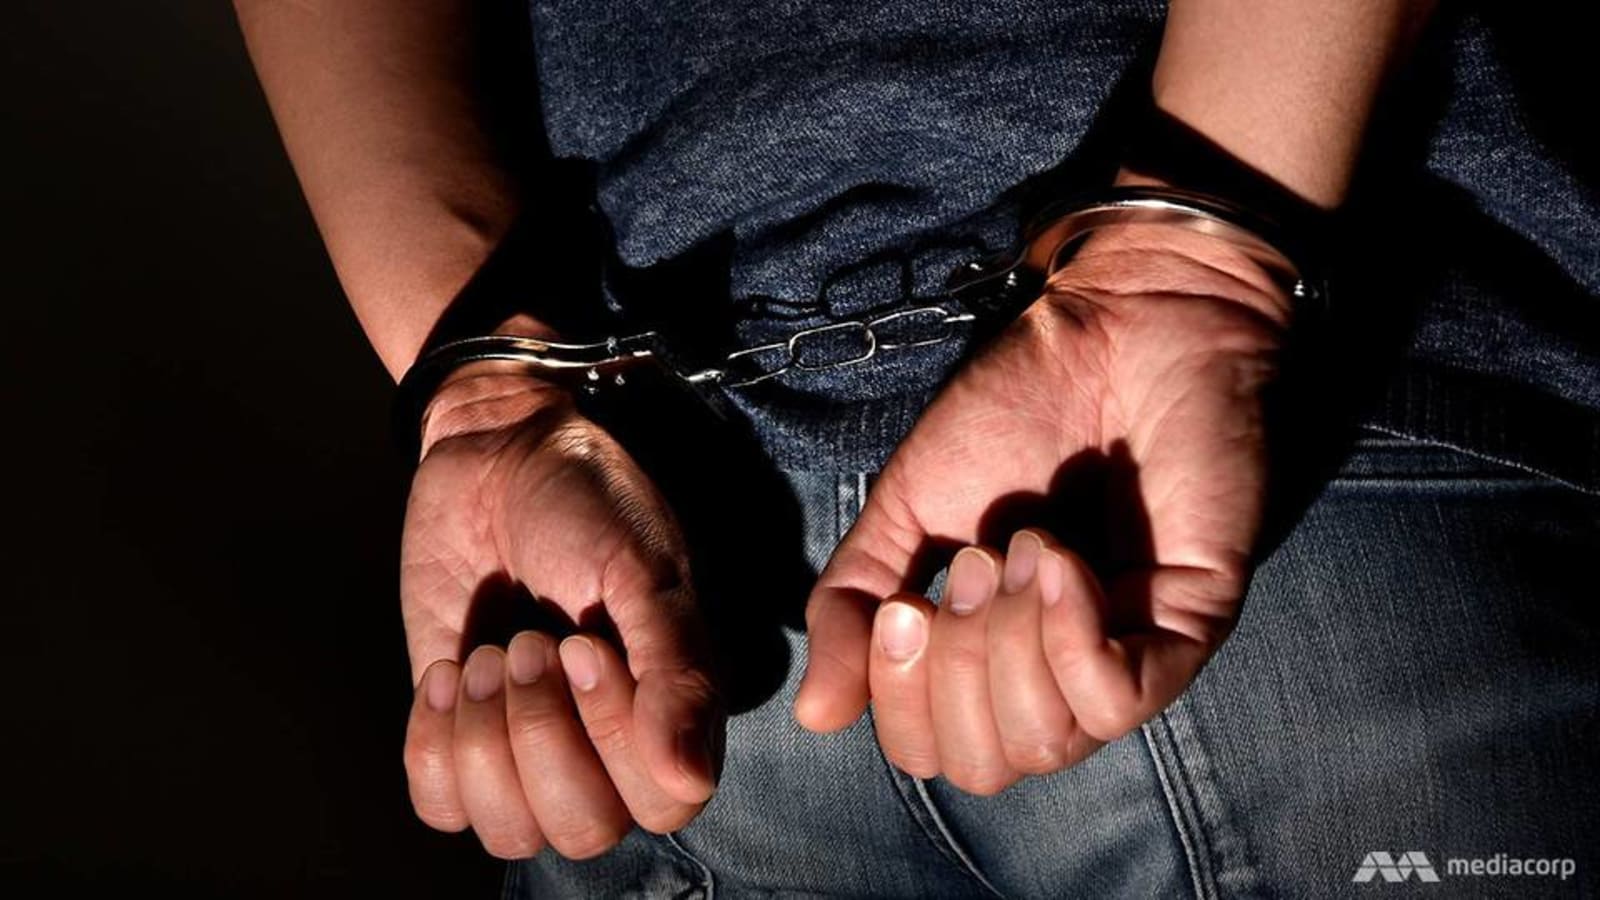 Man arrested for alleged molestation at Woodlands Industrial Park